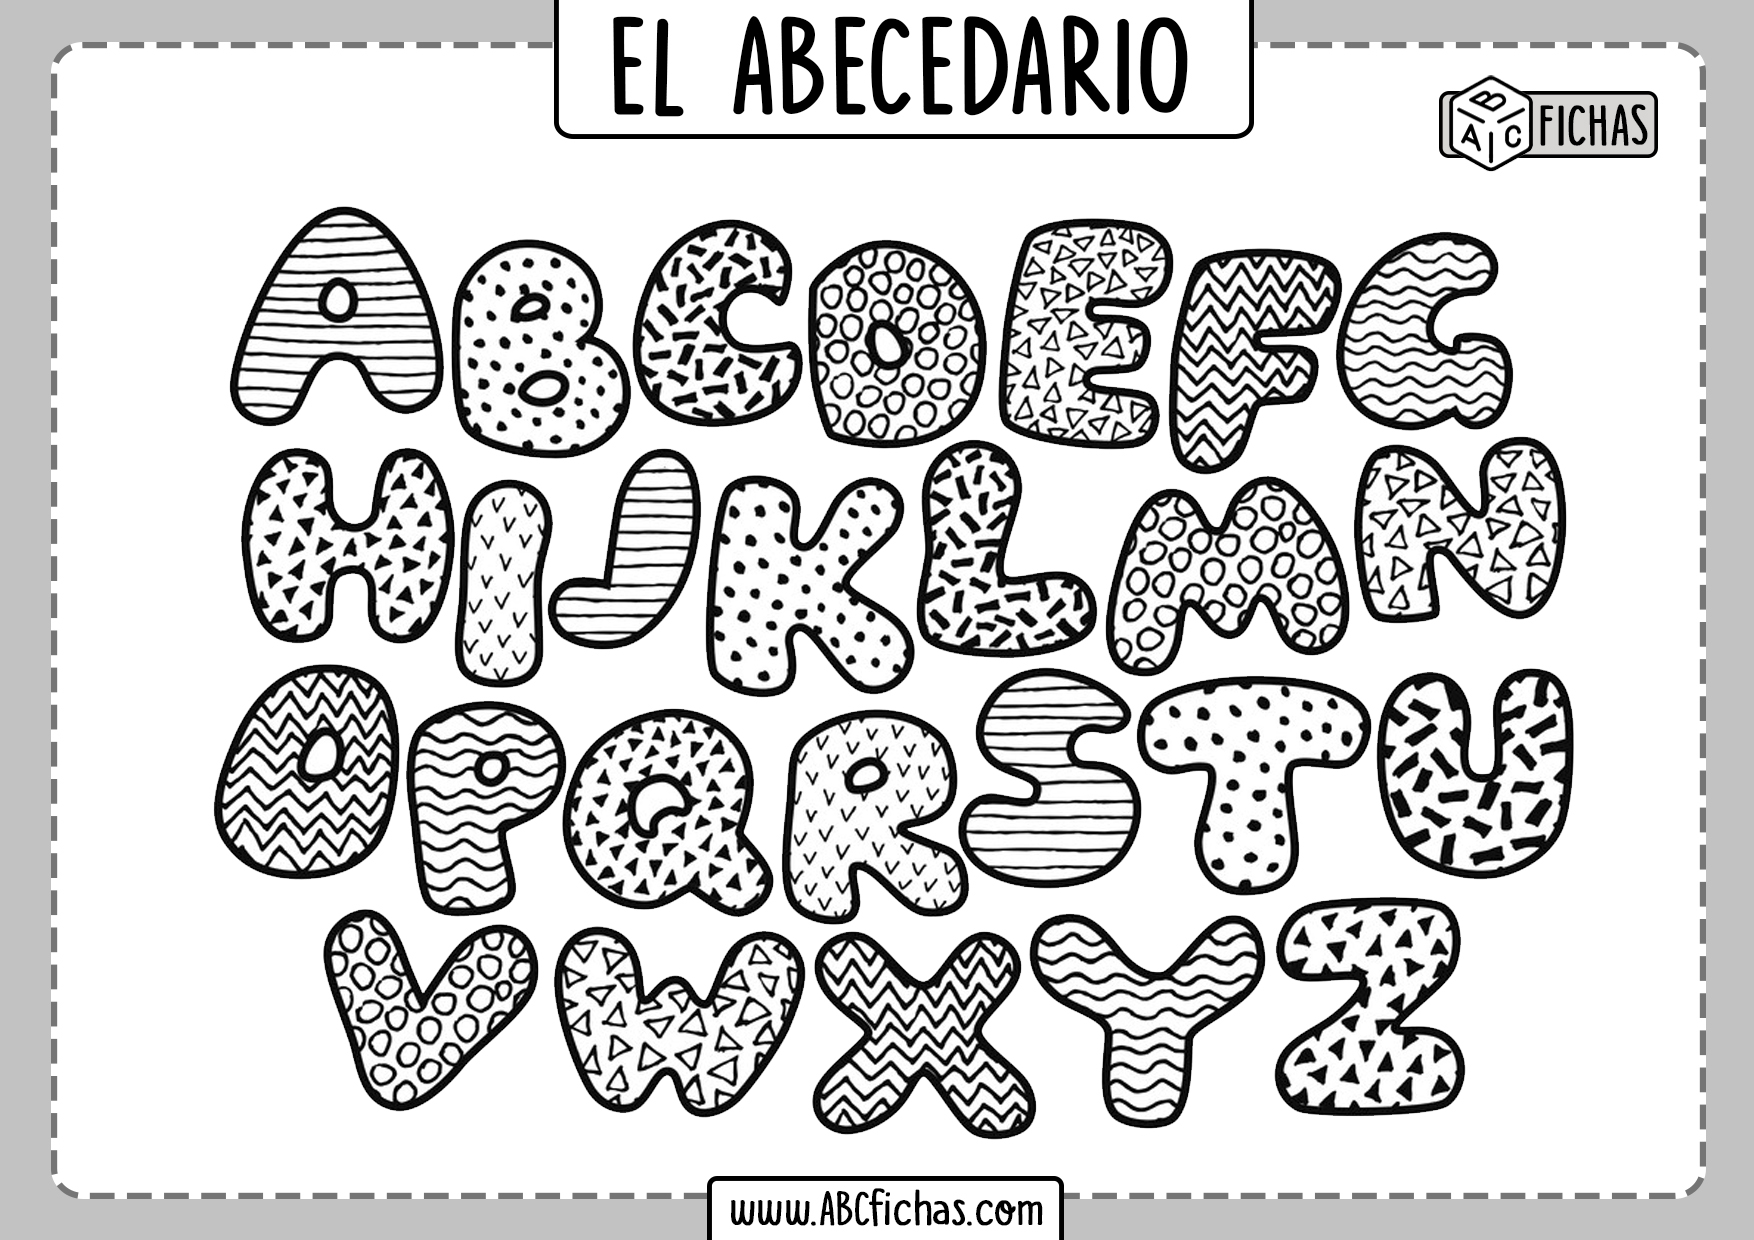 Letras del Abecedario - ABC Fichas